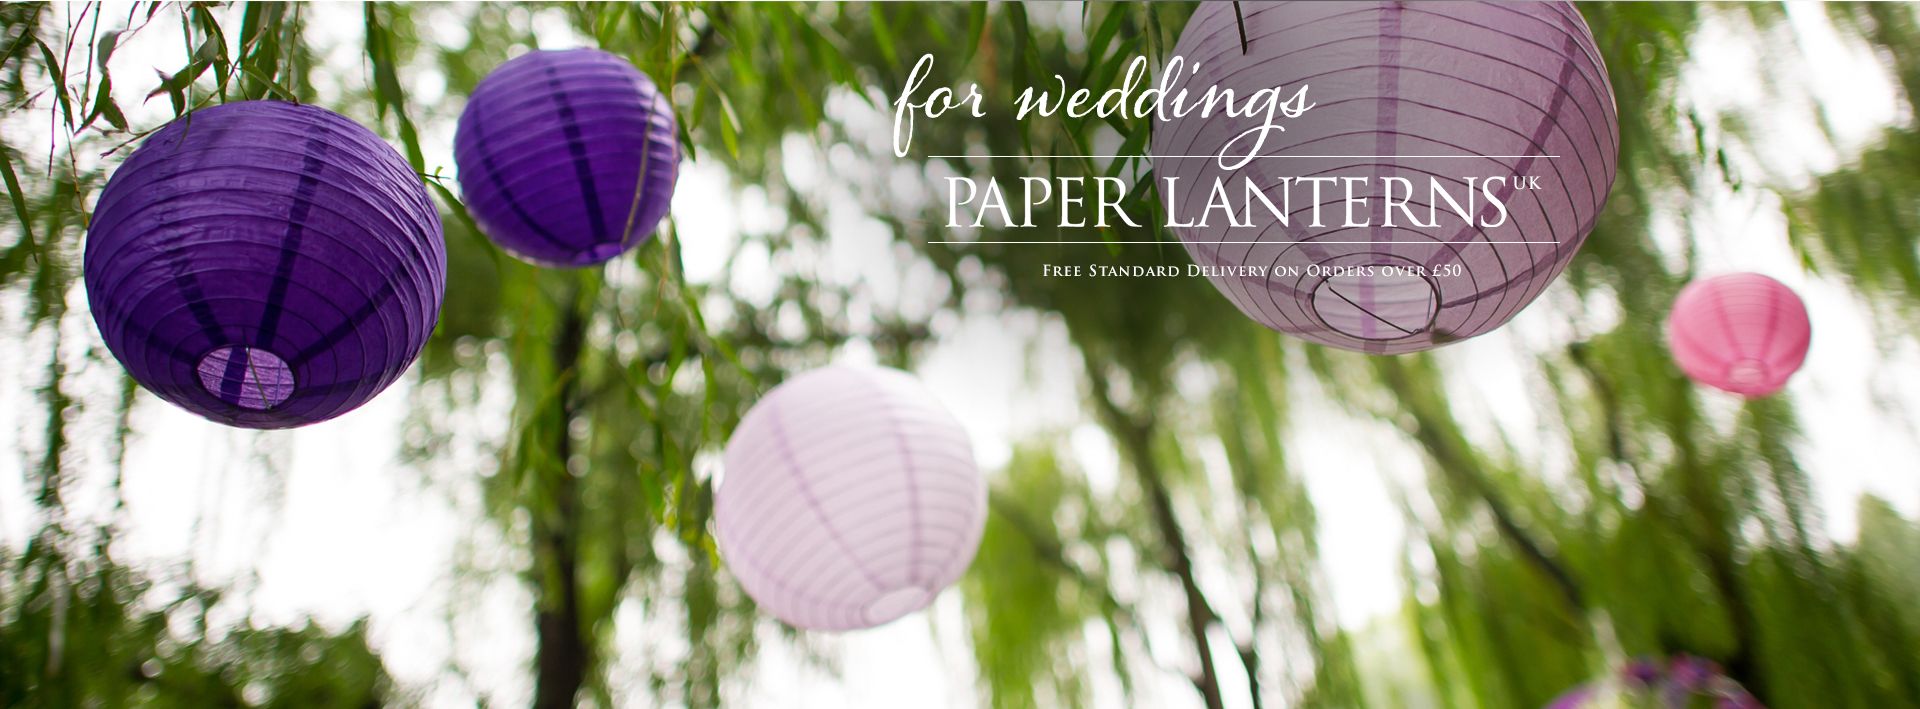 Paper Lanterns for weddings v2